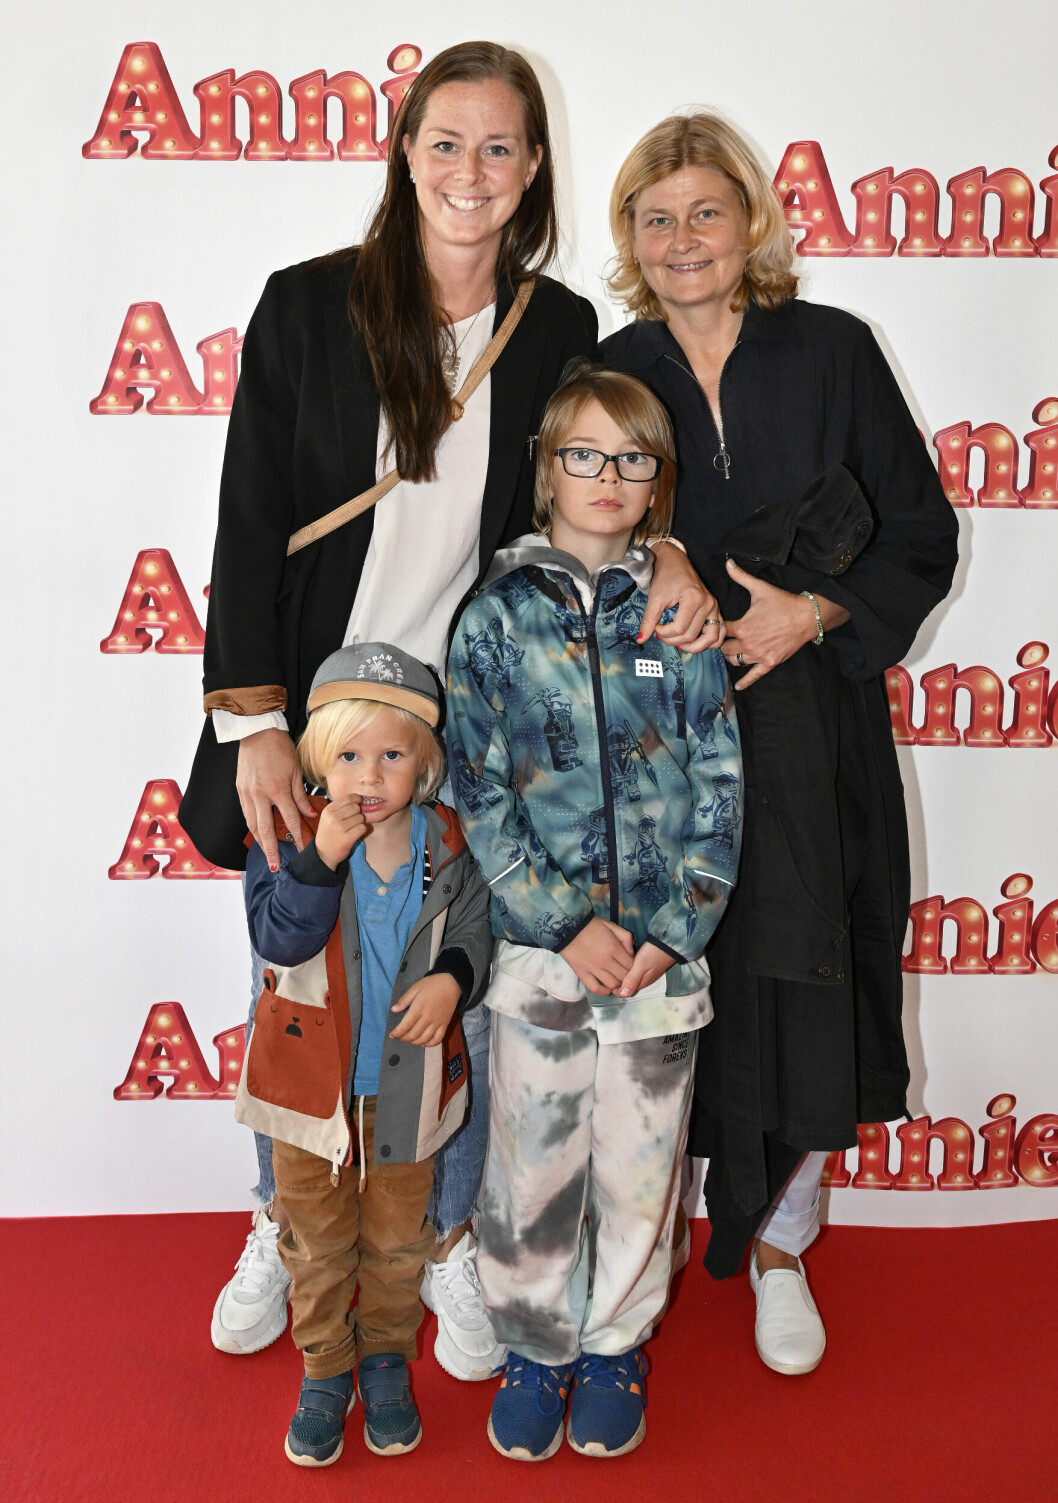 Lotta och Rebecca Schelin på röda mattan tillsammans med sonen Kalle [i keps] och Lottas systerson Melvin.